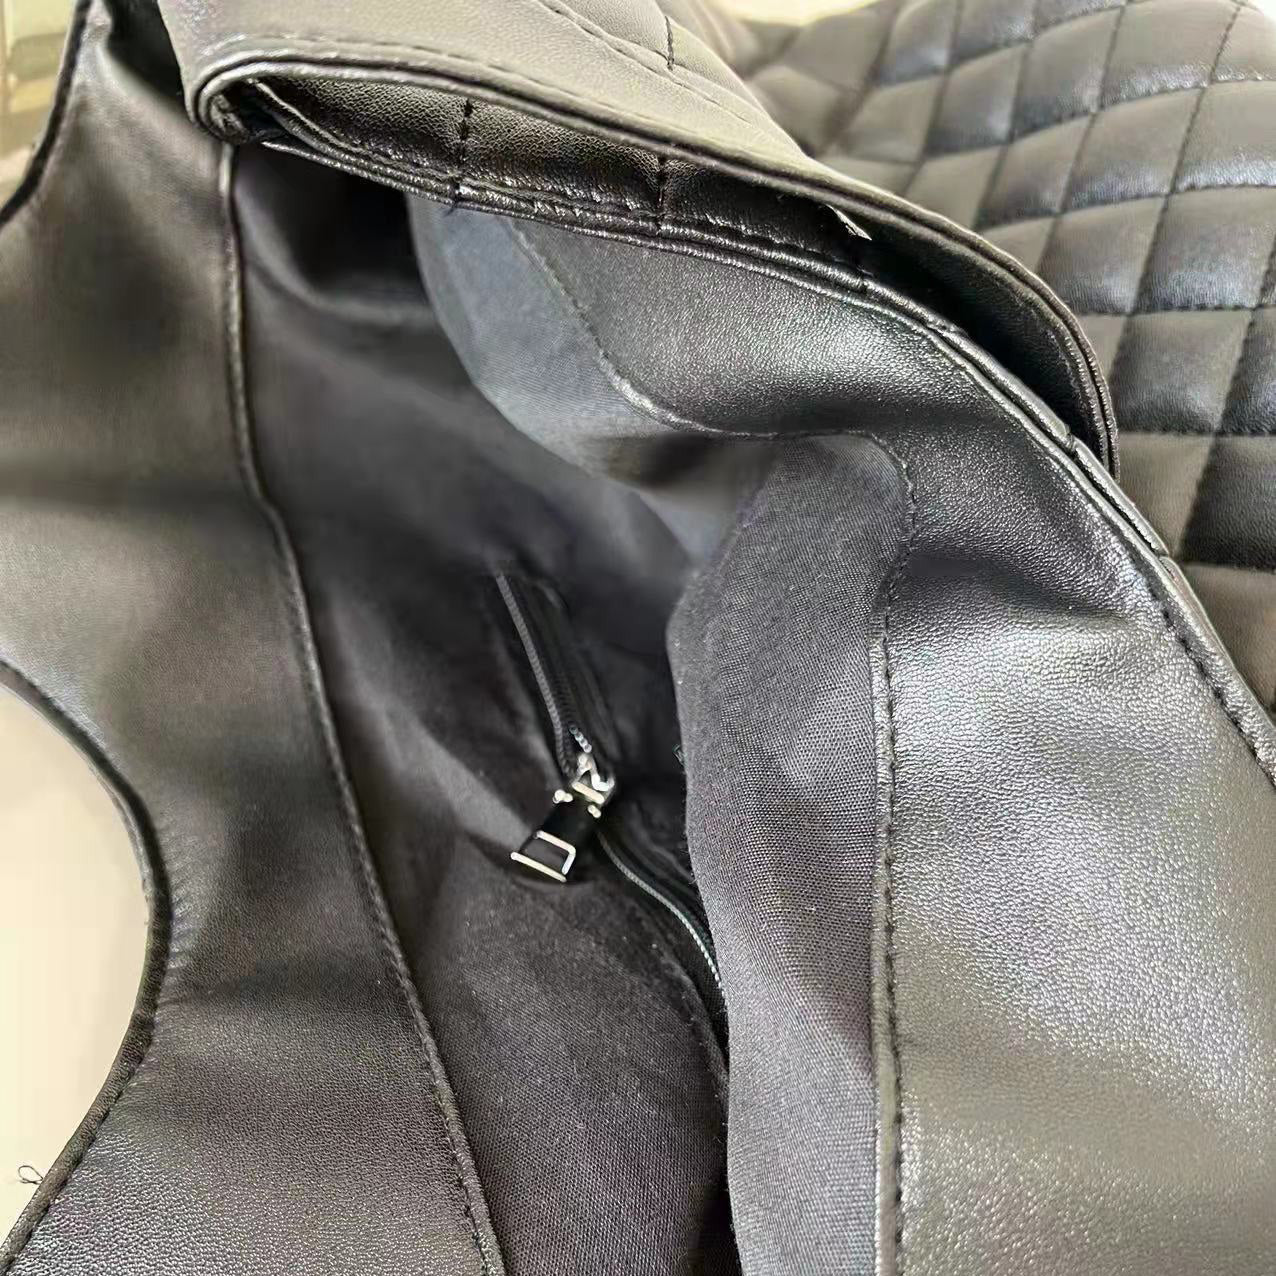 YSL Yves Saint Laurent Leather Shoulder Bag Large Shopper Tote B